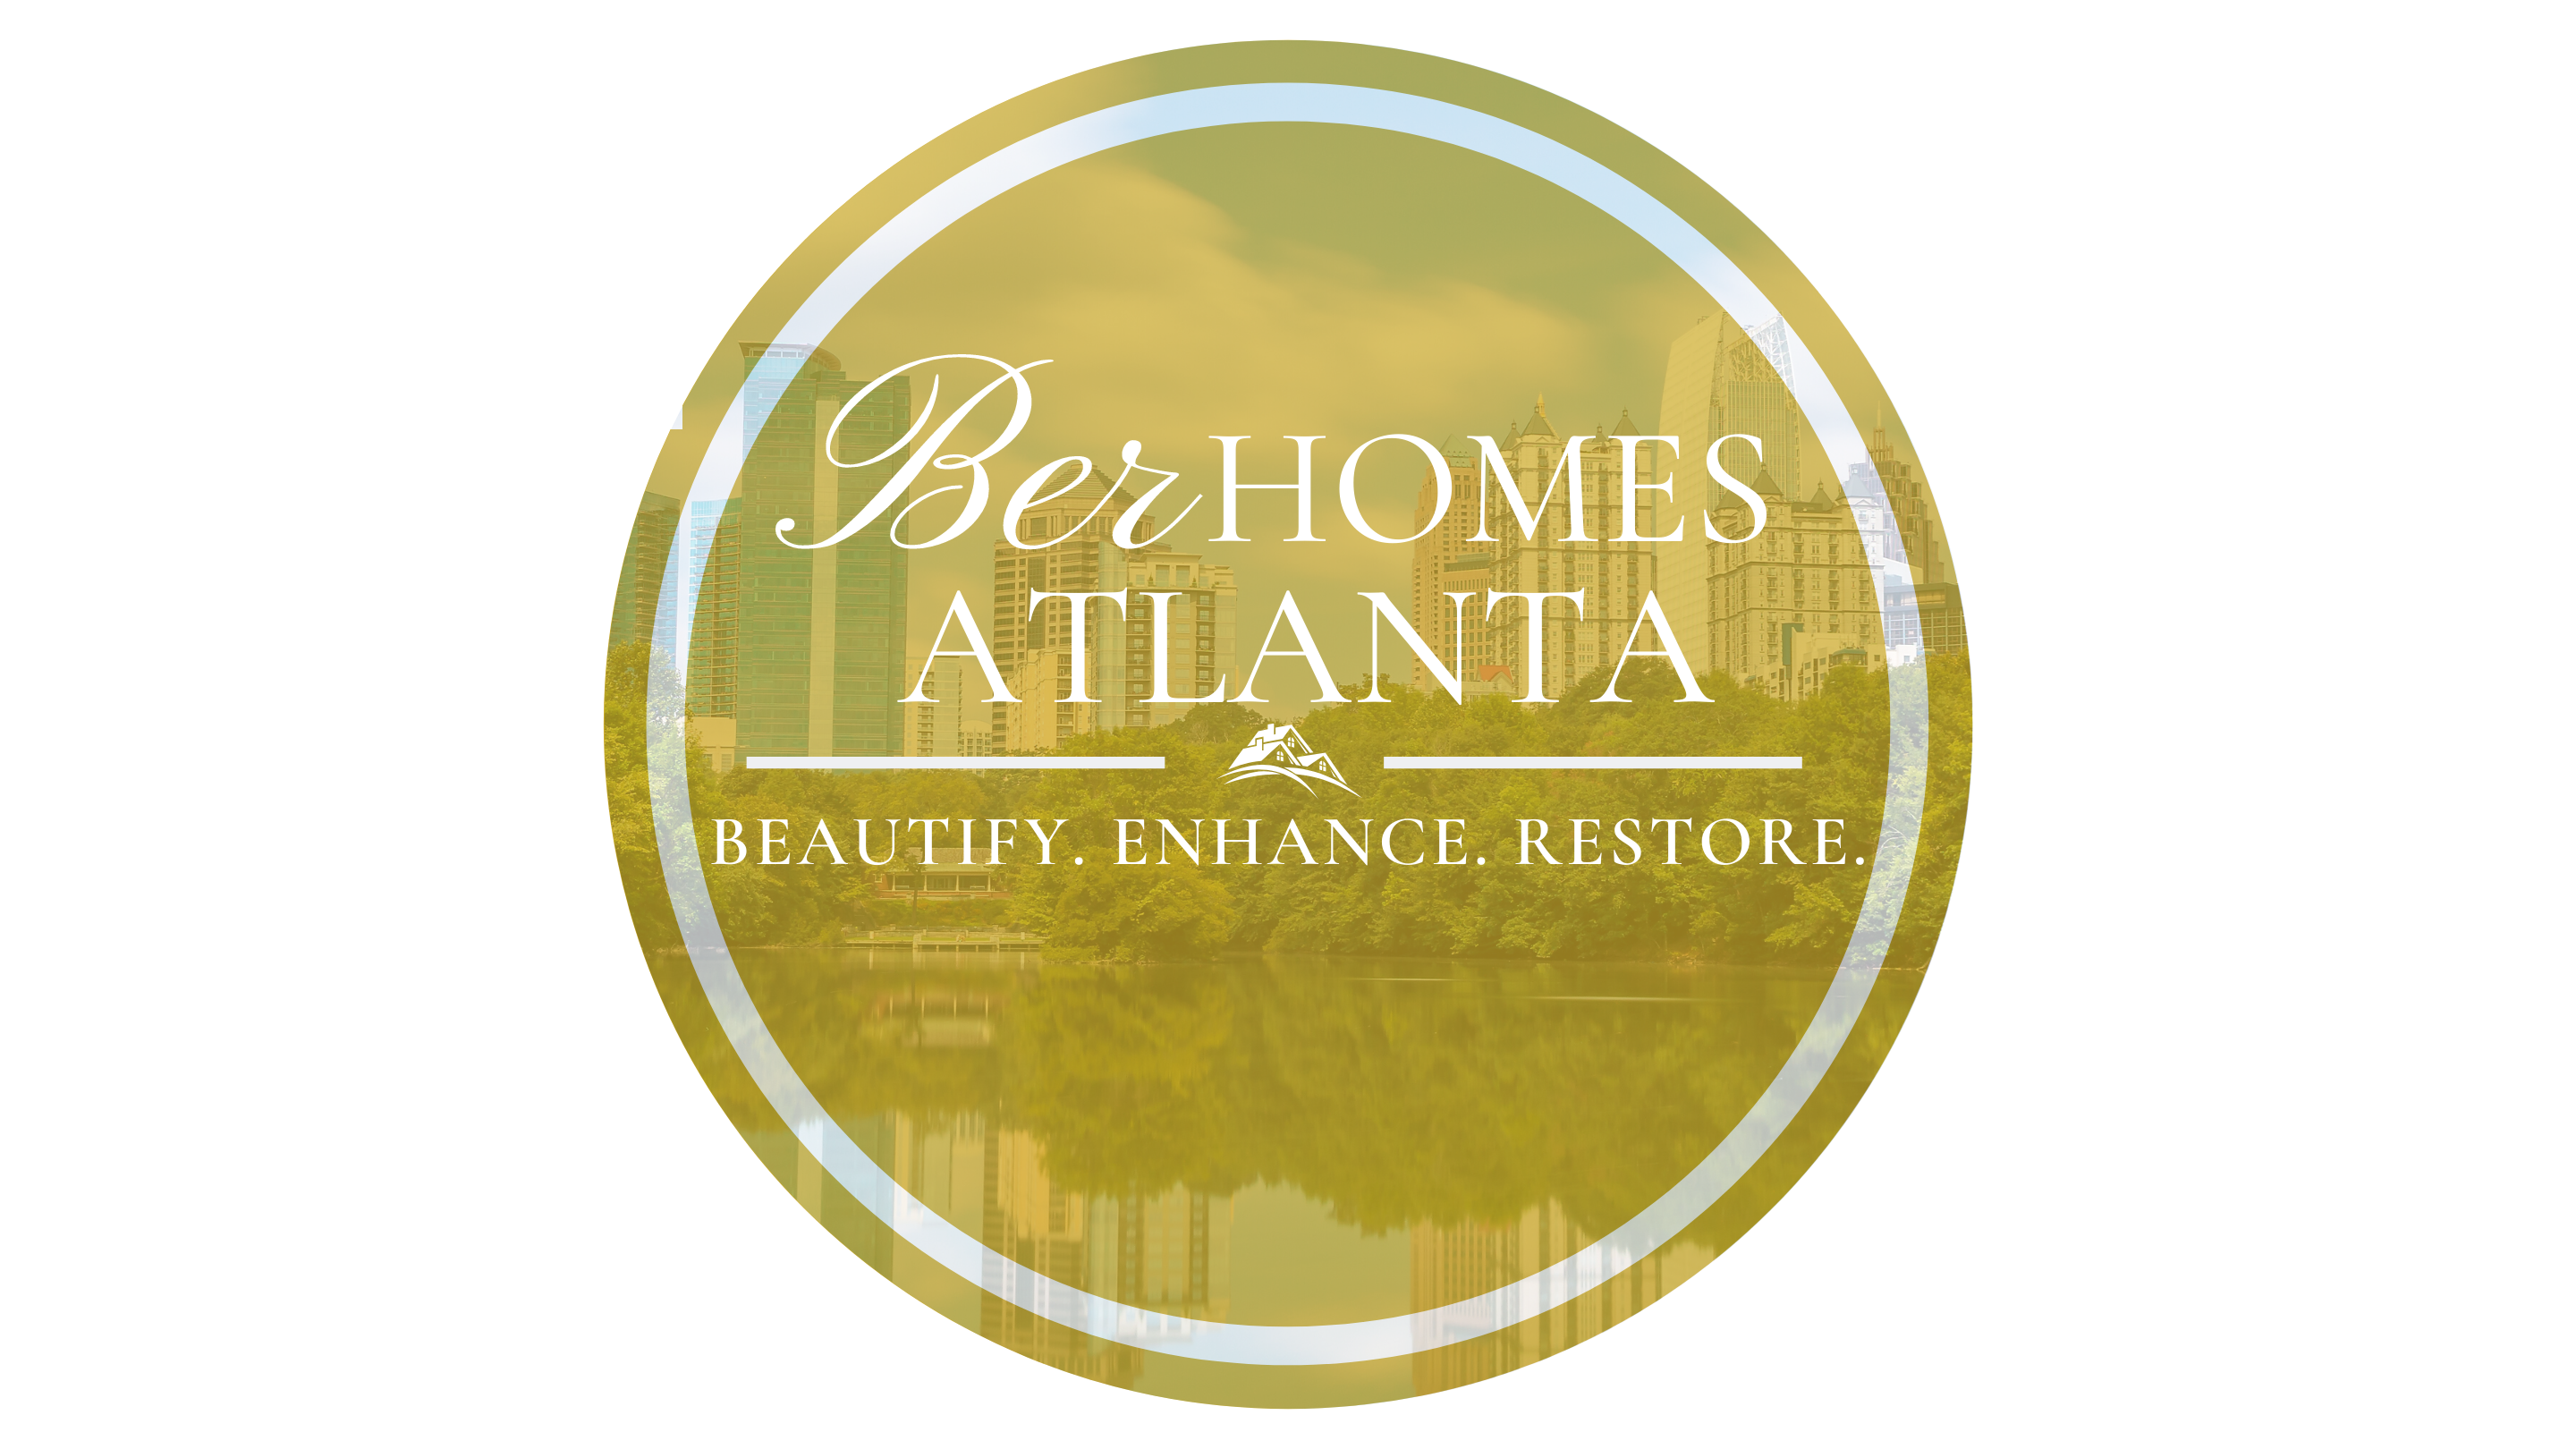 BER HOMES Atlanta